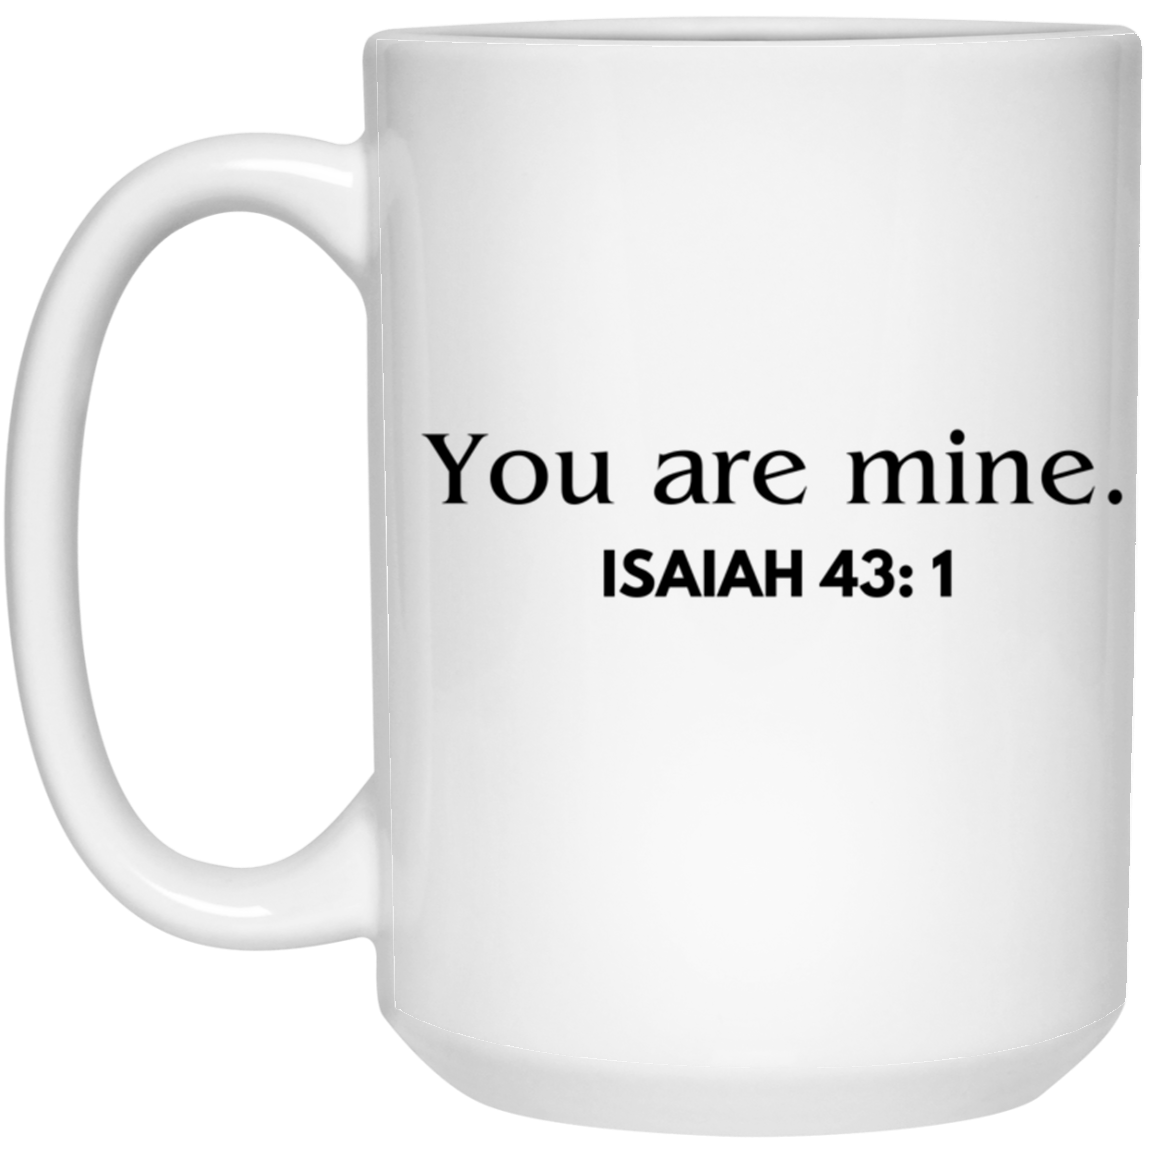 You are mine. (Isaiah 43:1)- 11 & 15 oz. White Mug